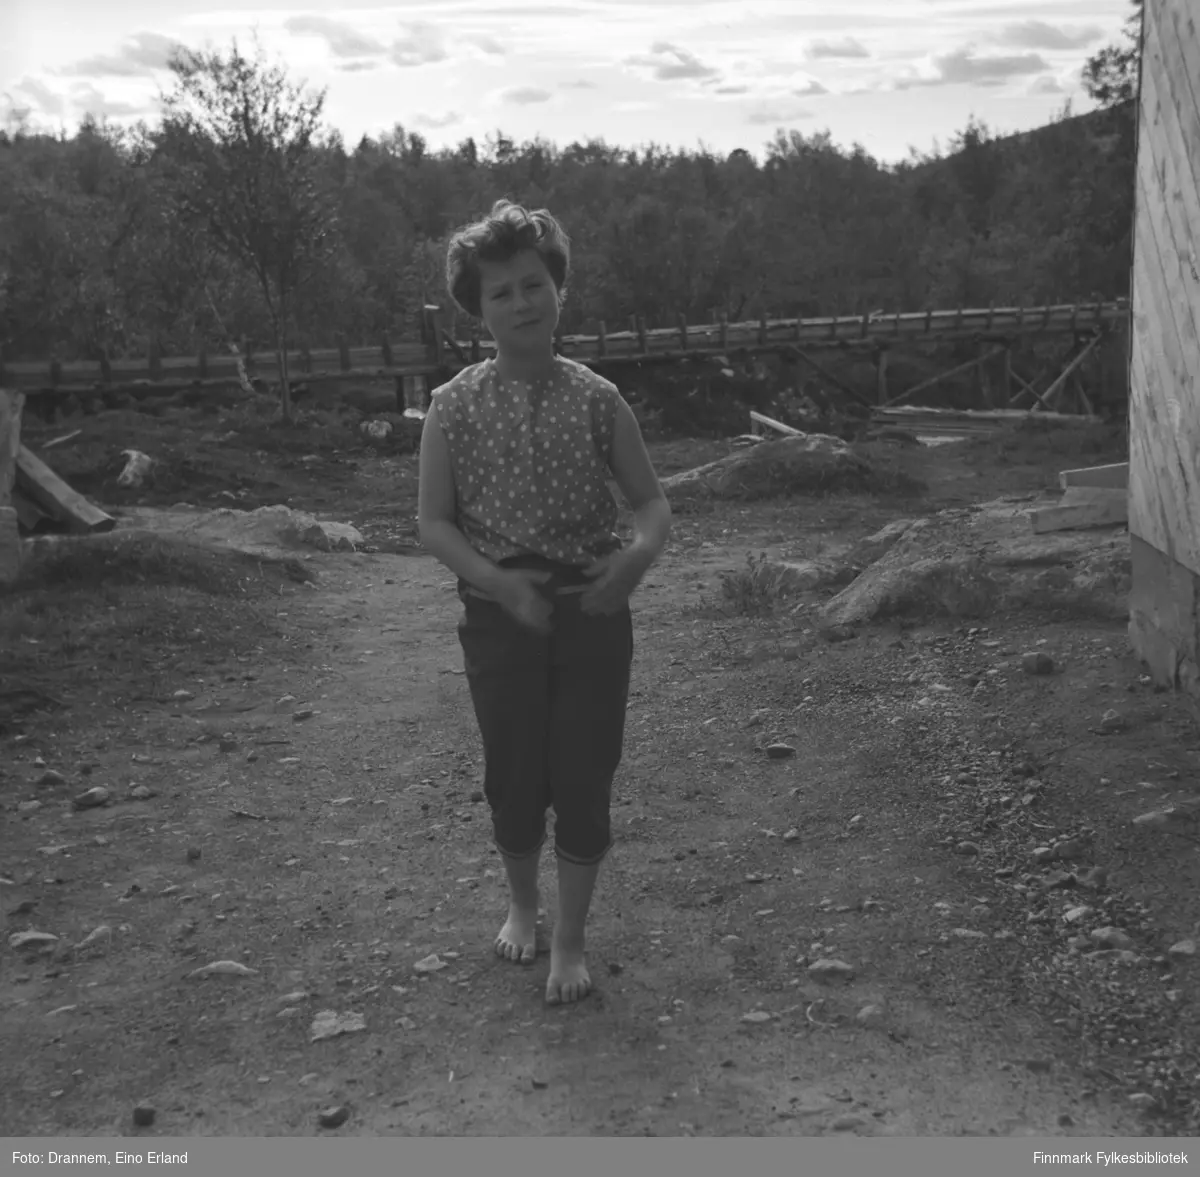 Turid Karikoski fotografert på en gårdsplass. Pga. vannrennen i bakgrunnen som er med på flere bilder i Drannem-samlingen, kan stedet være Luolajärvi i Finland.